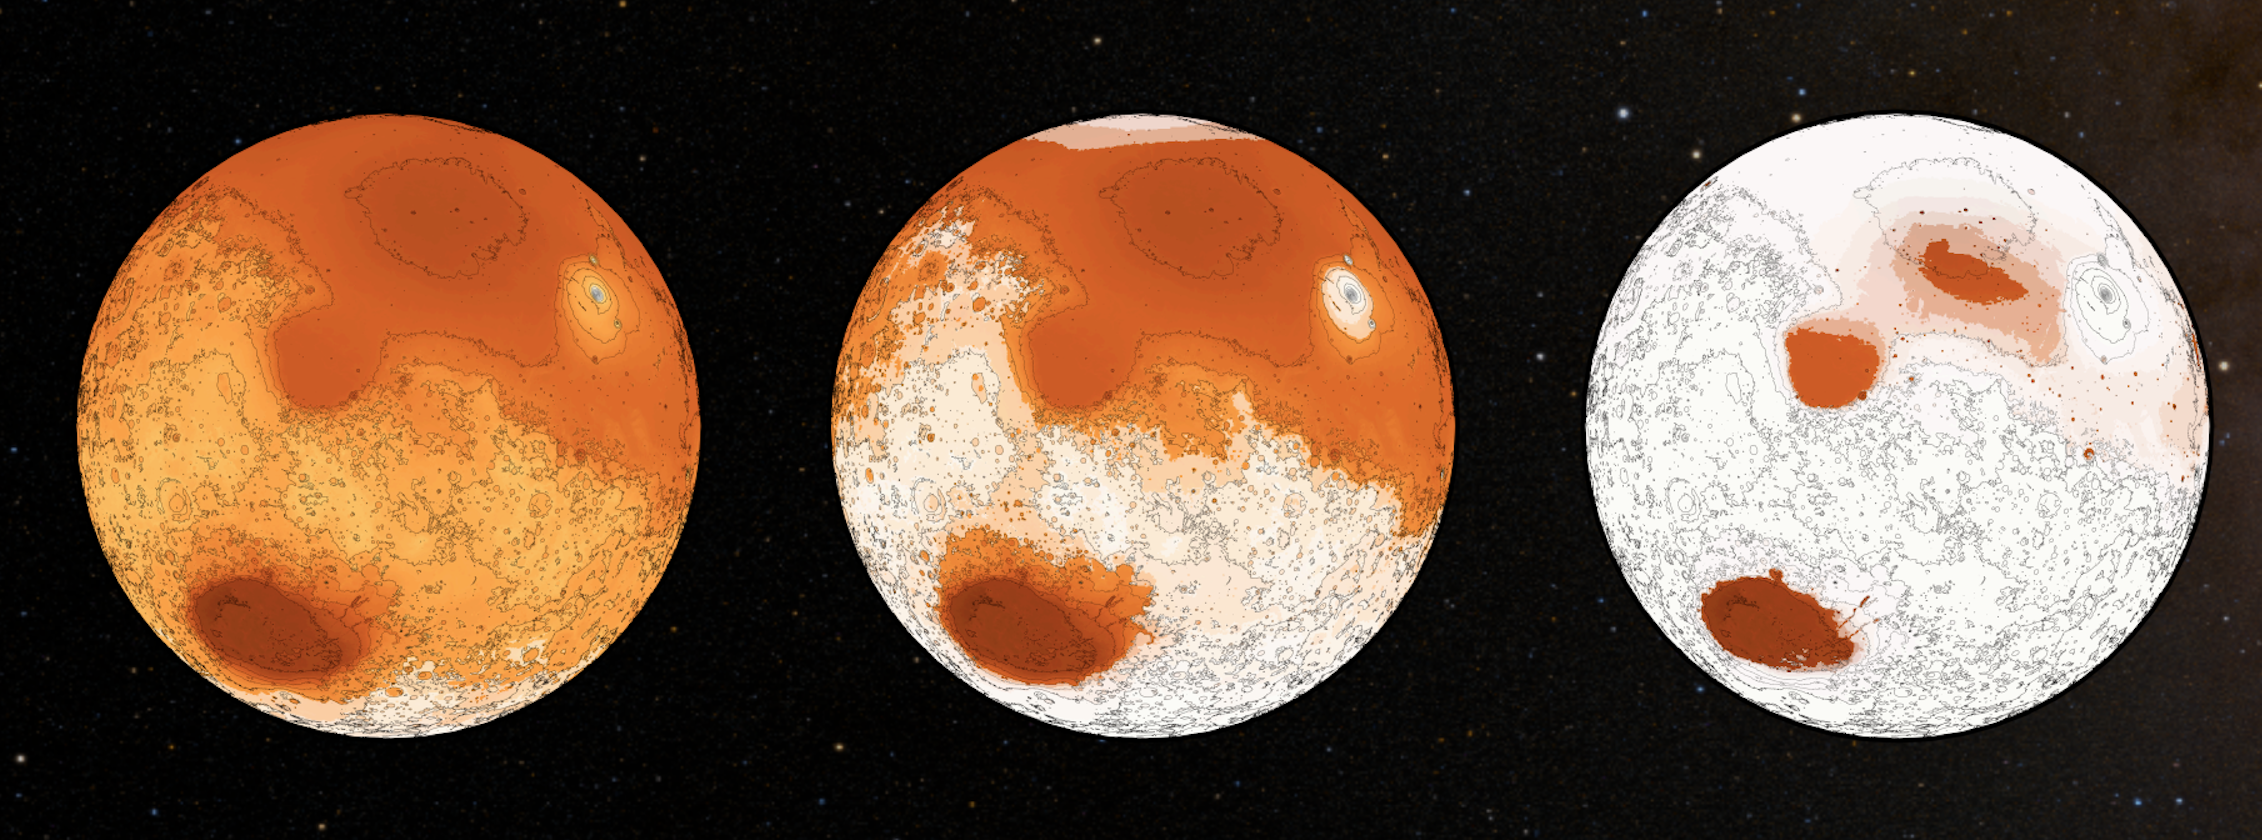 марс планет раст фото 81